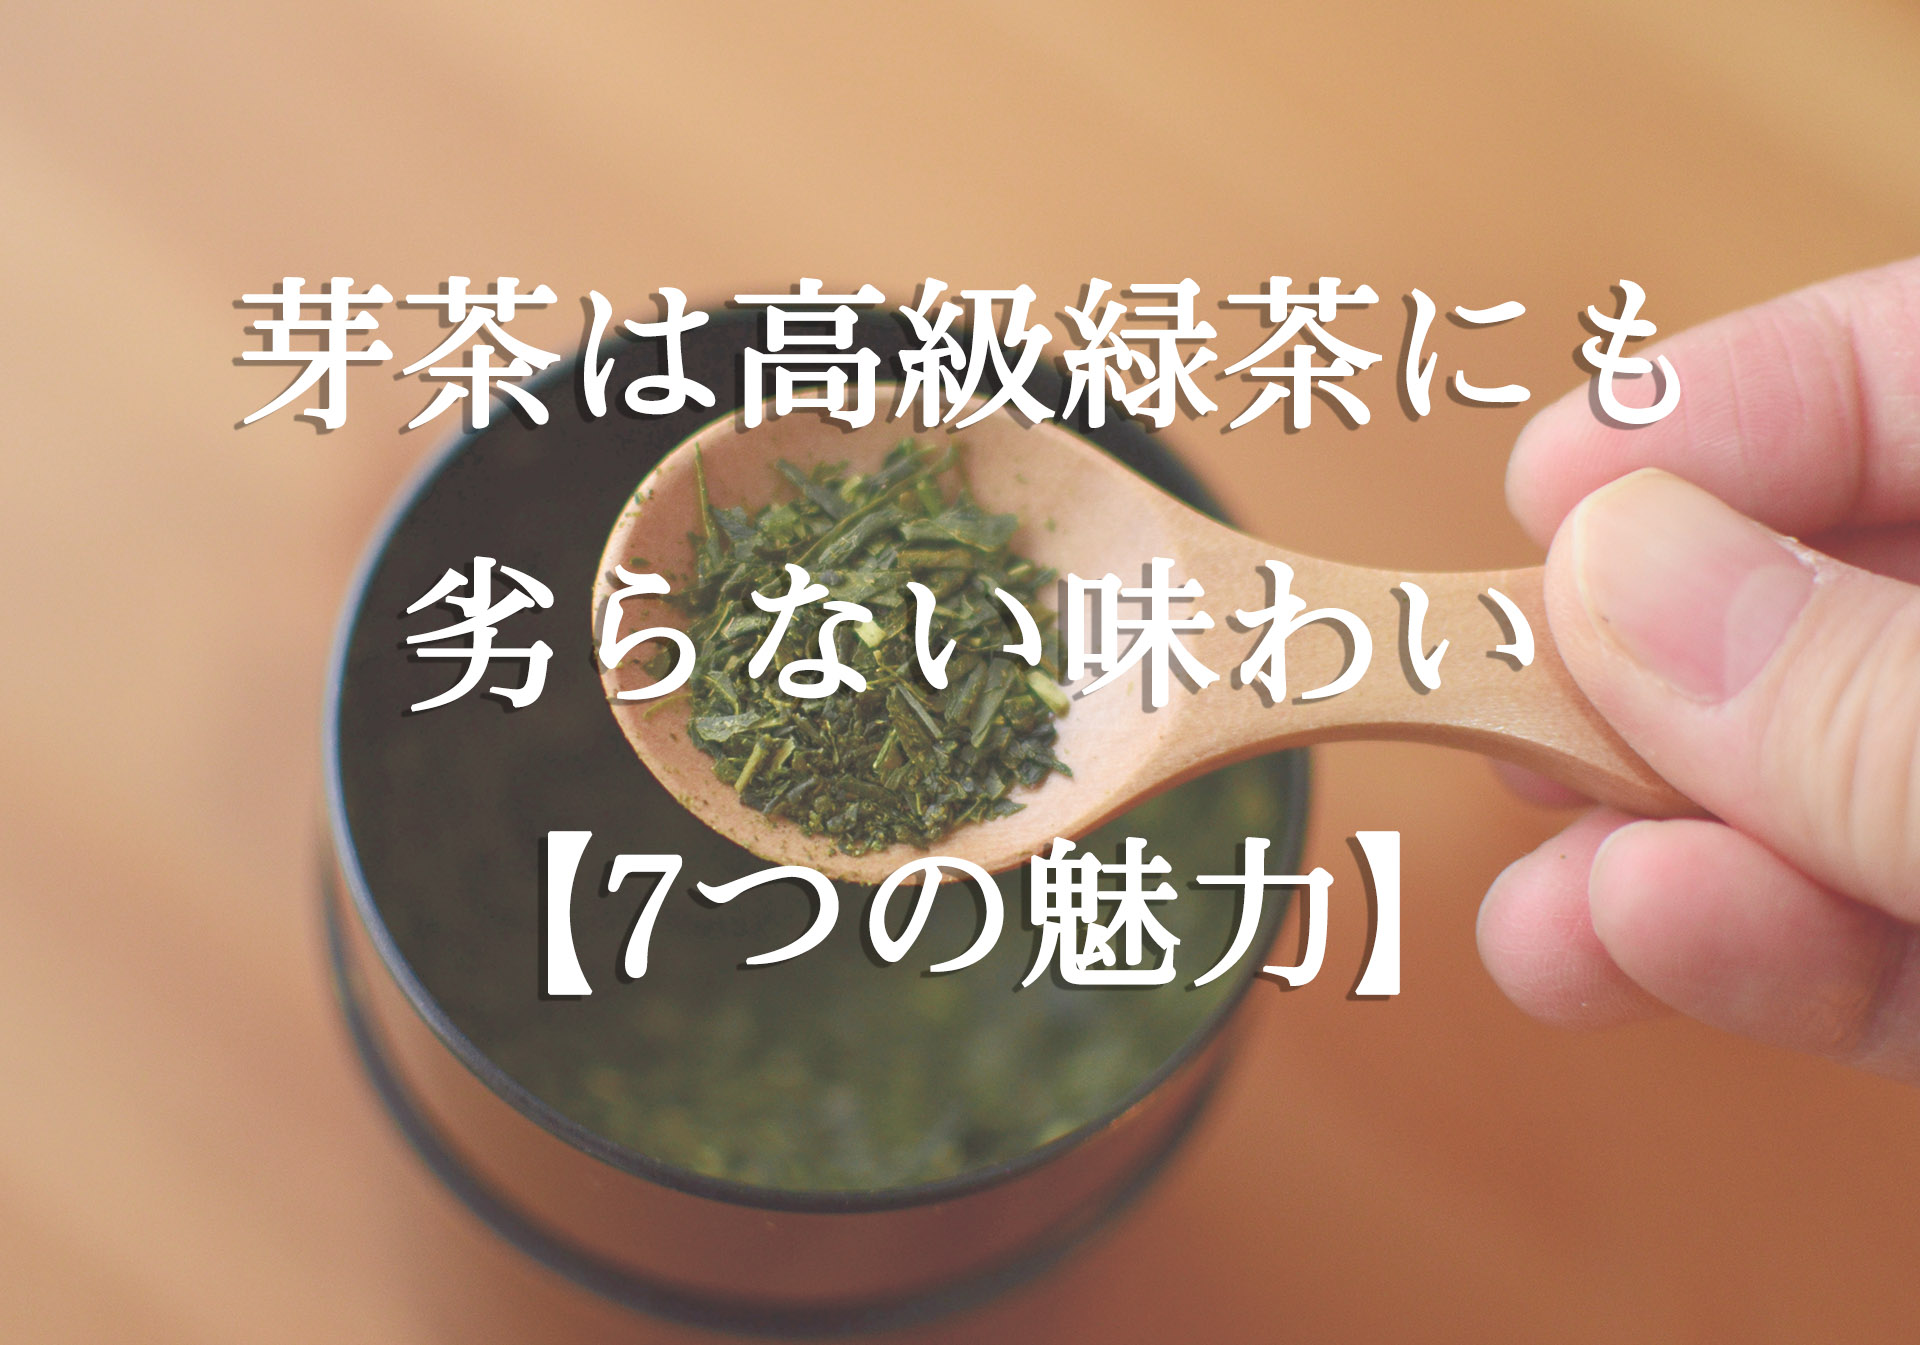 芽茶は高級緑茶にも劣らない味わいの緑茶【7つの魅力】